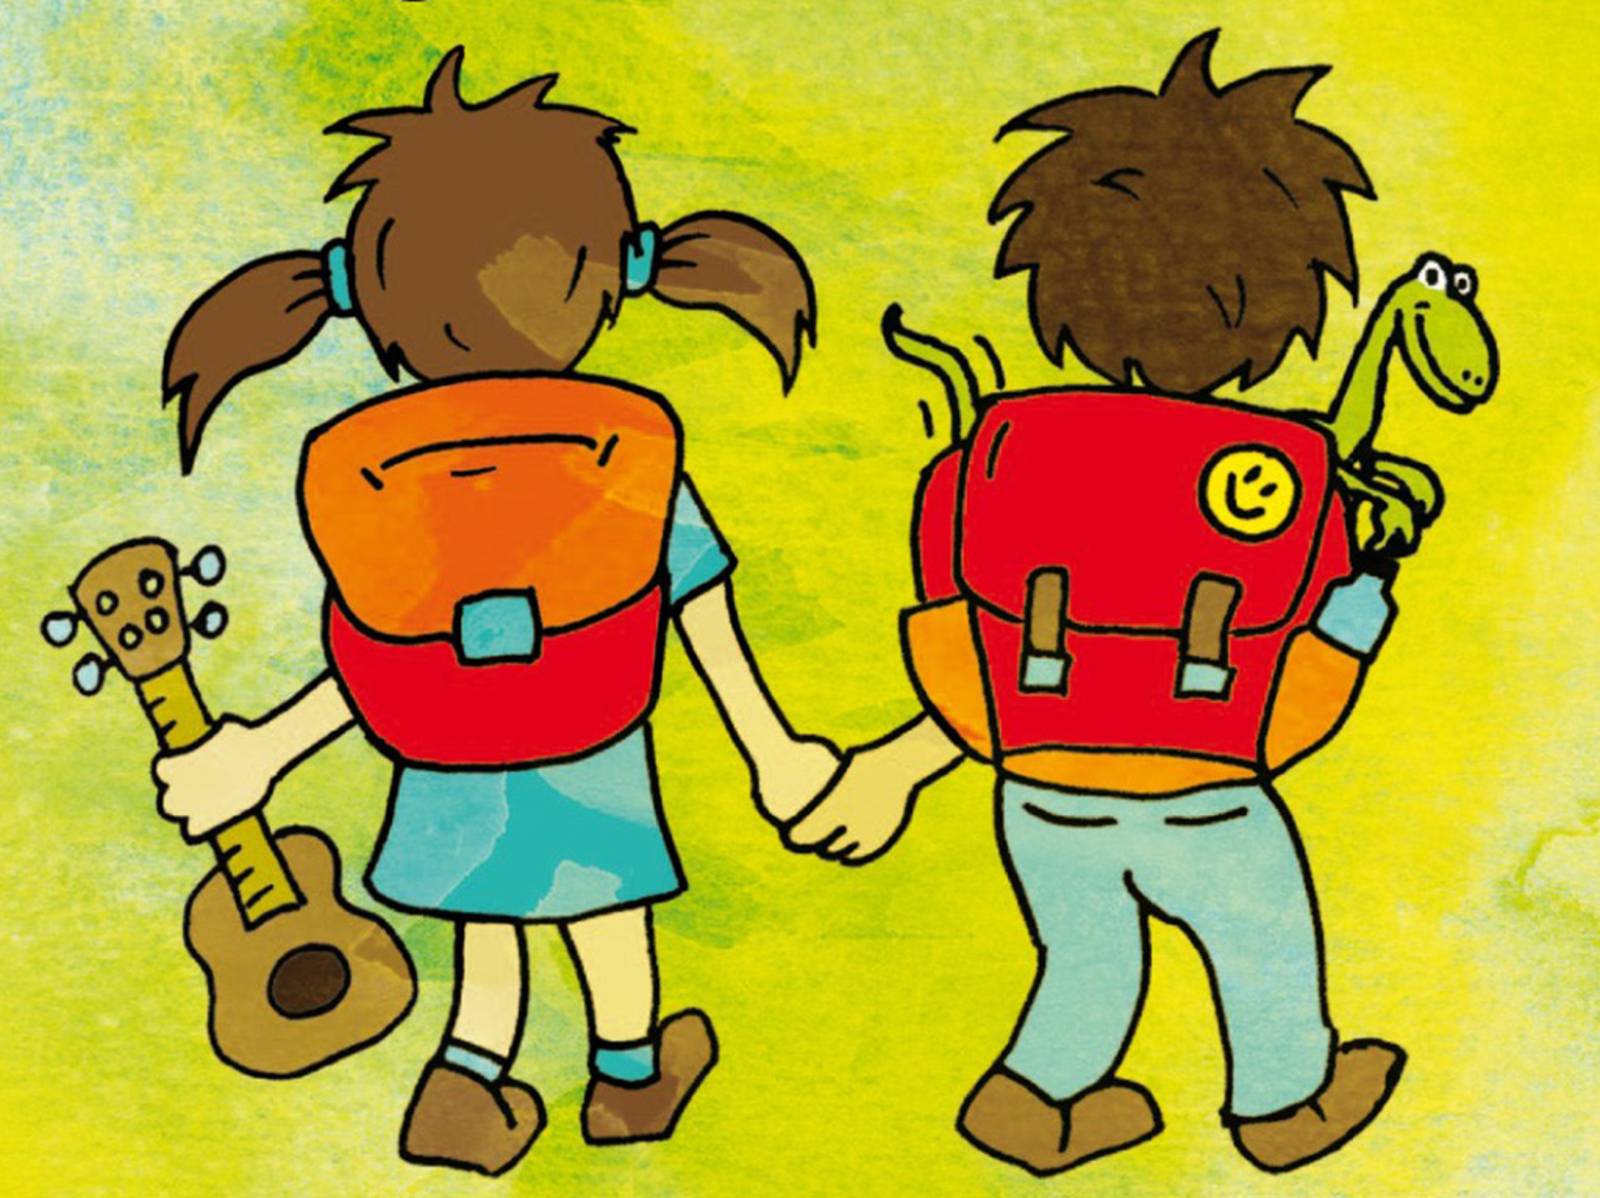 Ausschnitt aus dem Cover der Kinderlieder-CD "Der Rucksack ist gepackt", der eine Zeichnung von zwei Kindern mit Rucksack zeigt, die sich an den Händen halten.